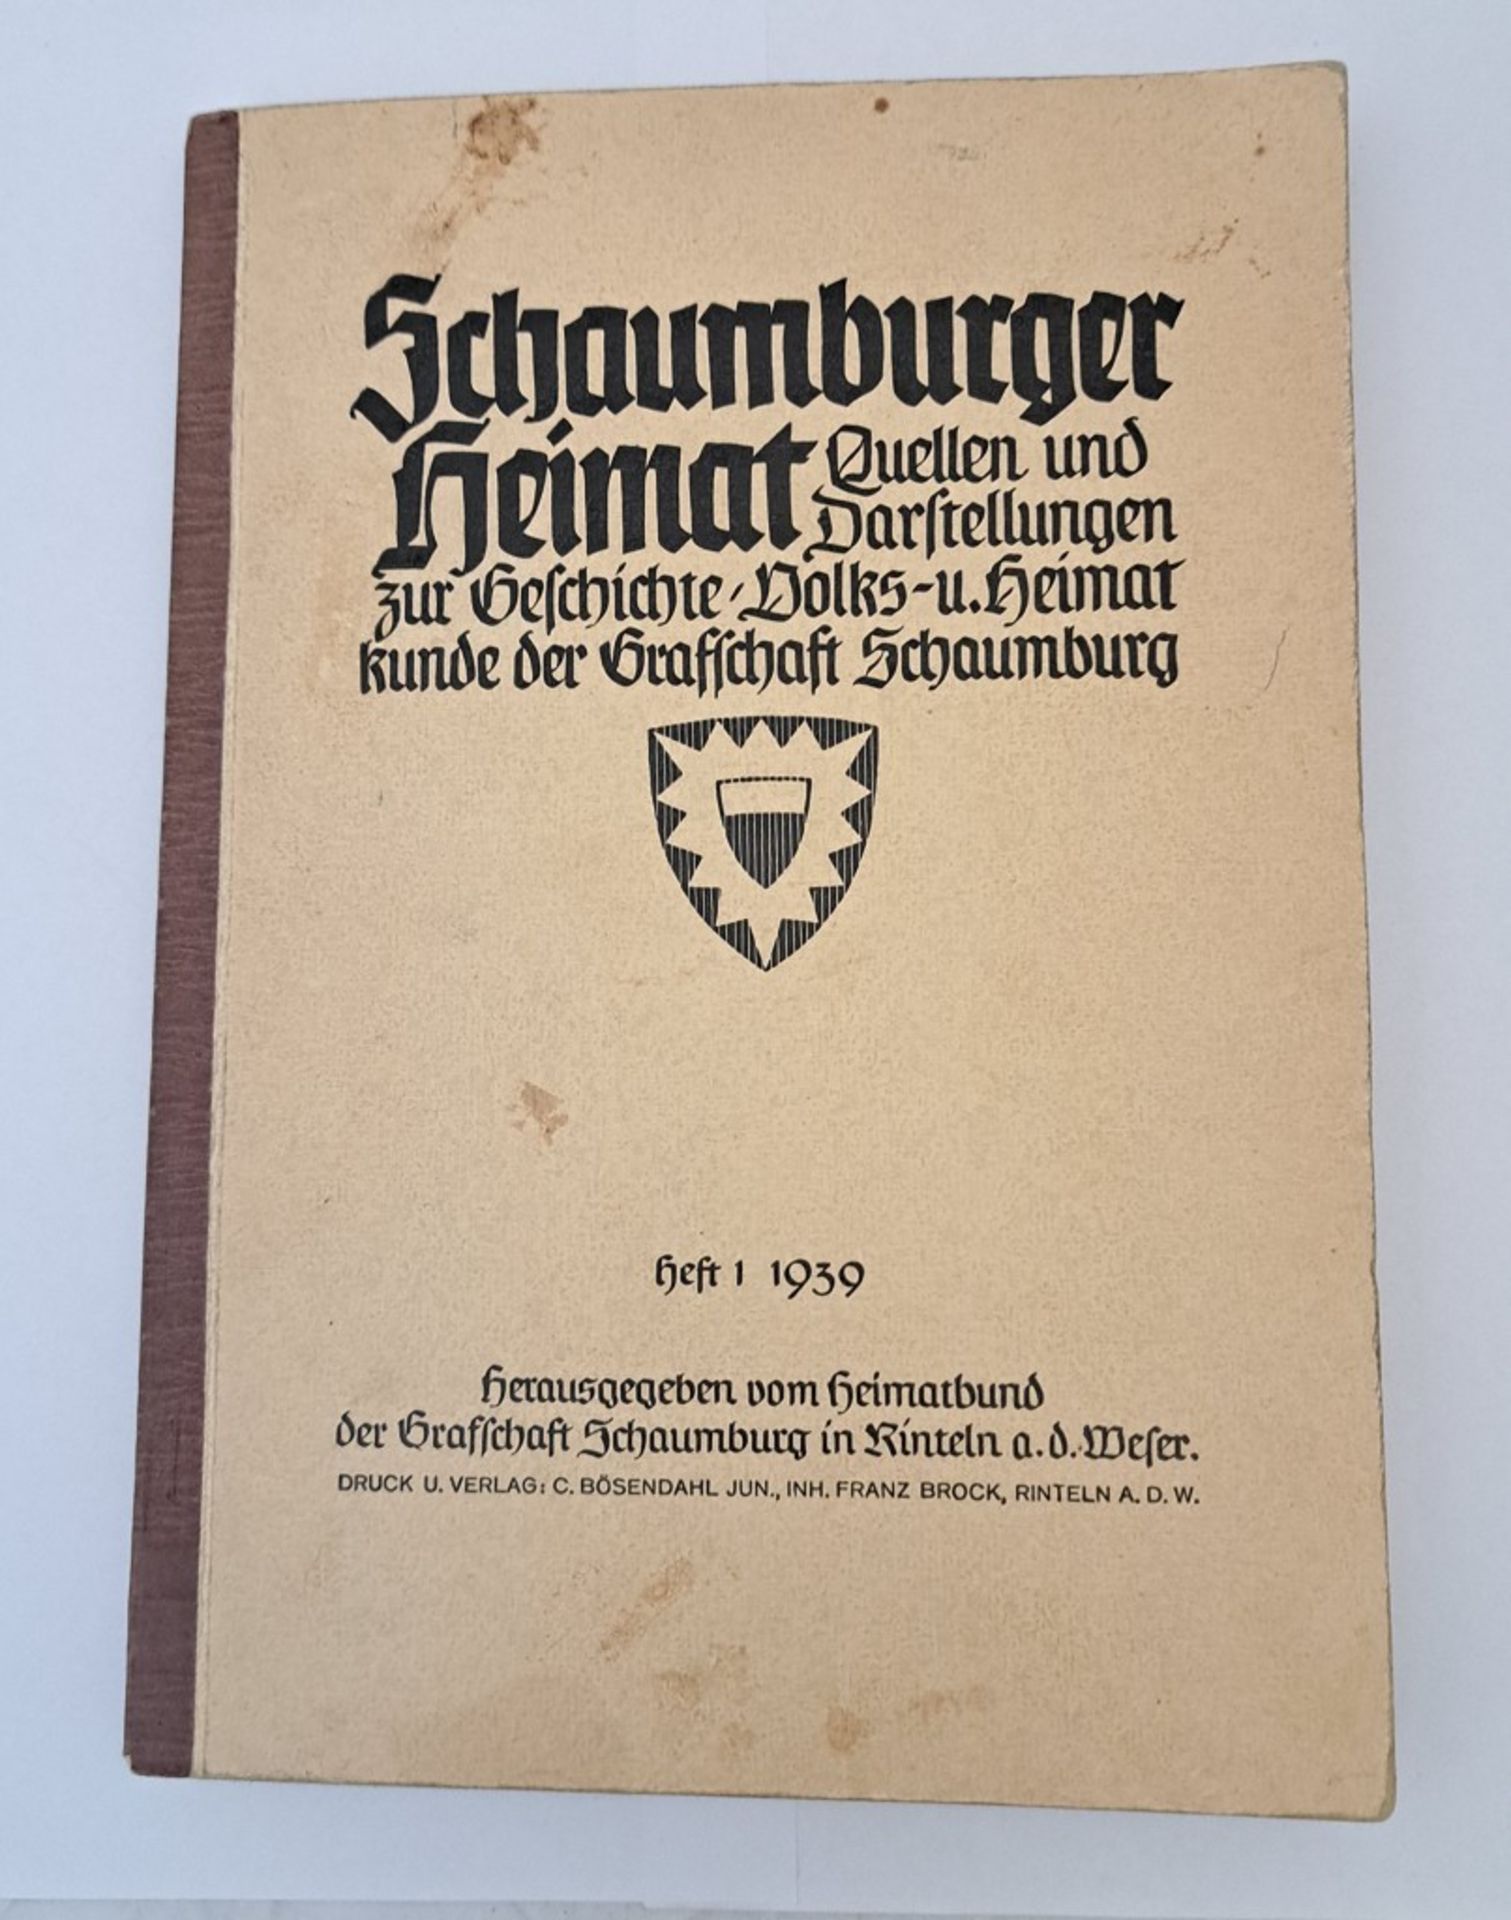 WKII 1939 Schaumburger Heimat Landeskunde Volkskunde